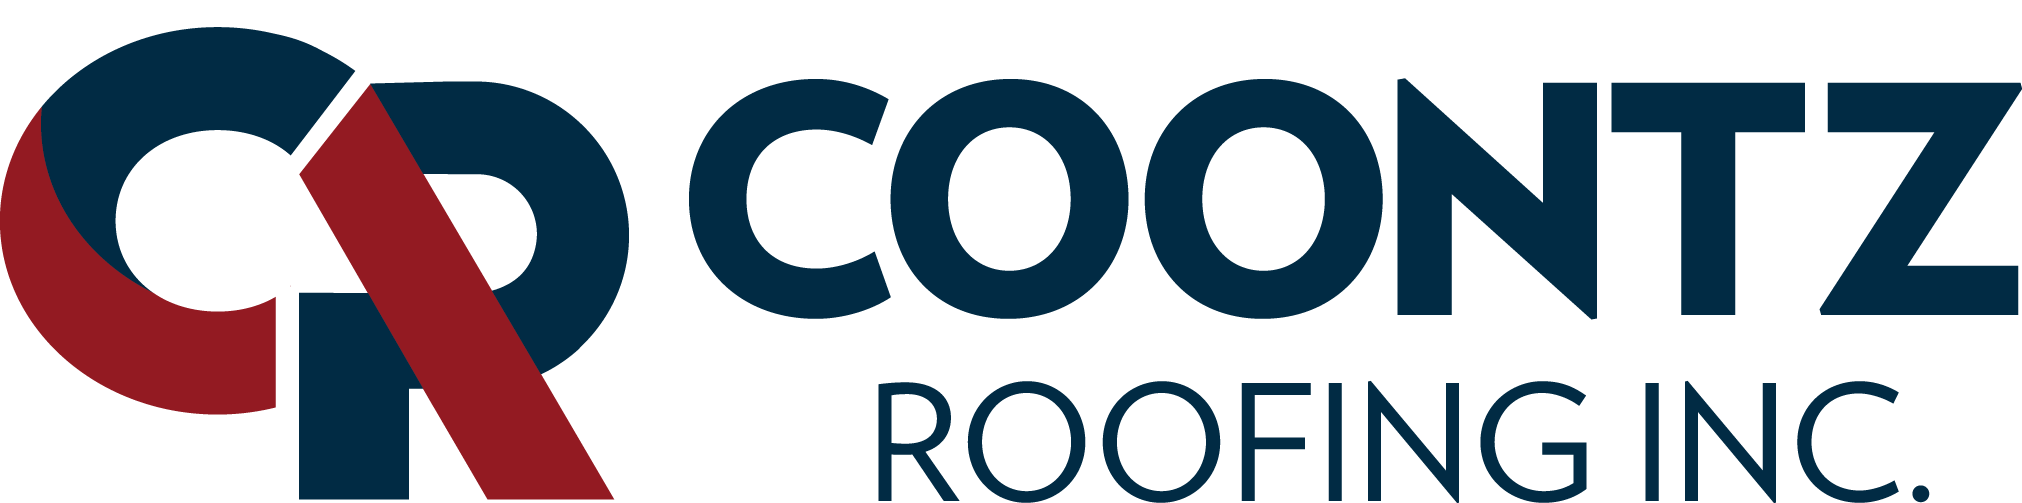 Coontz Roofing